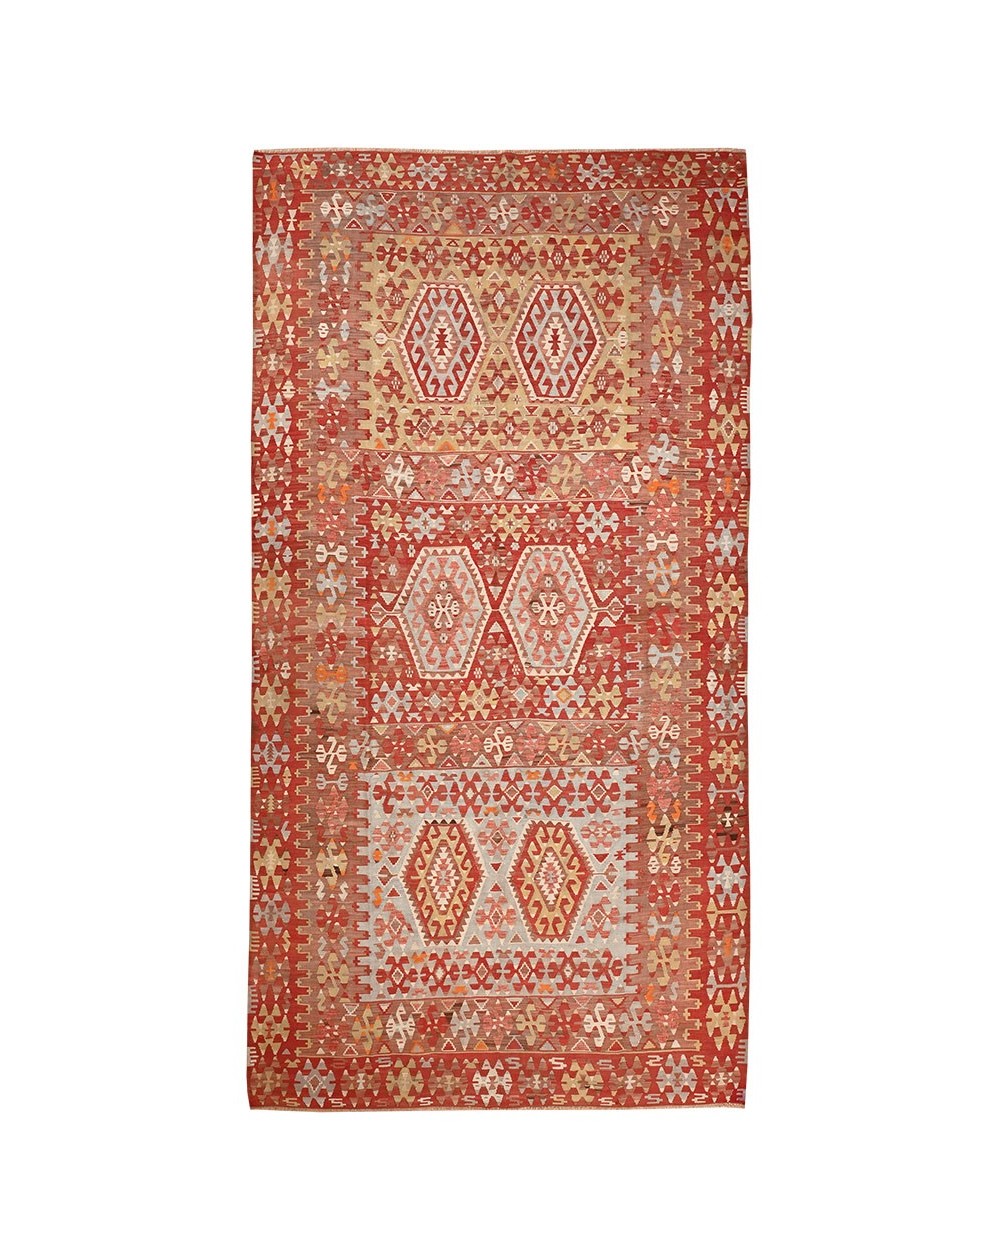 antique carpet with soft colors